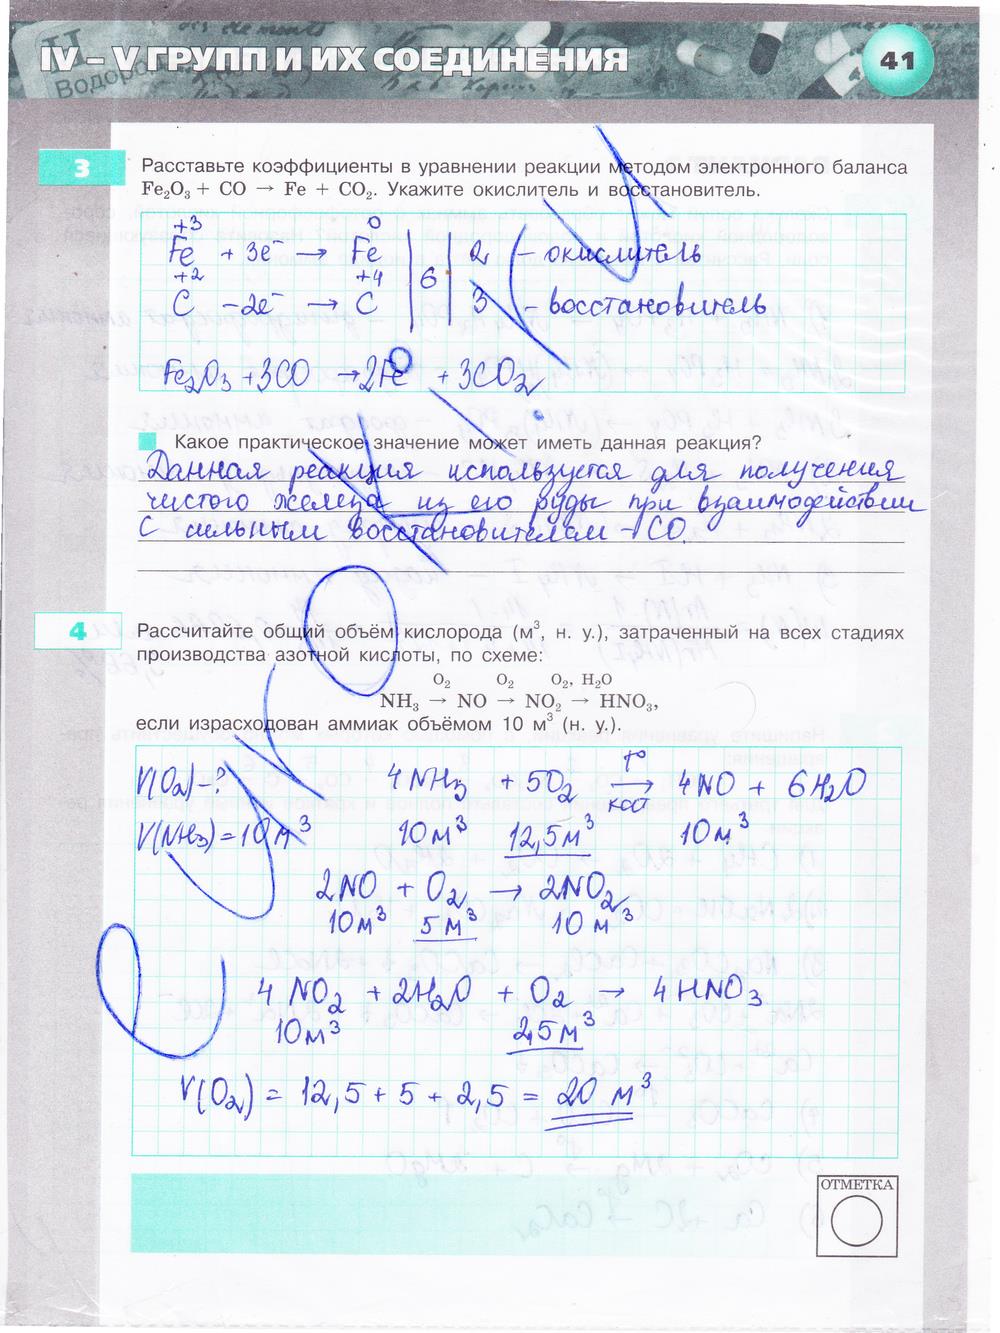 гдз 9 класс тетрадь-экзаменатор страница 41 химия Бобылева, Бирюлина